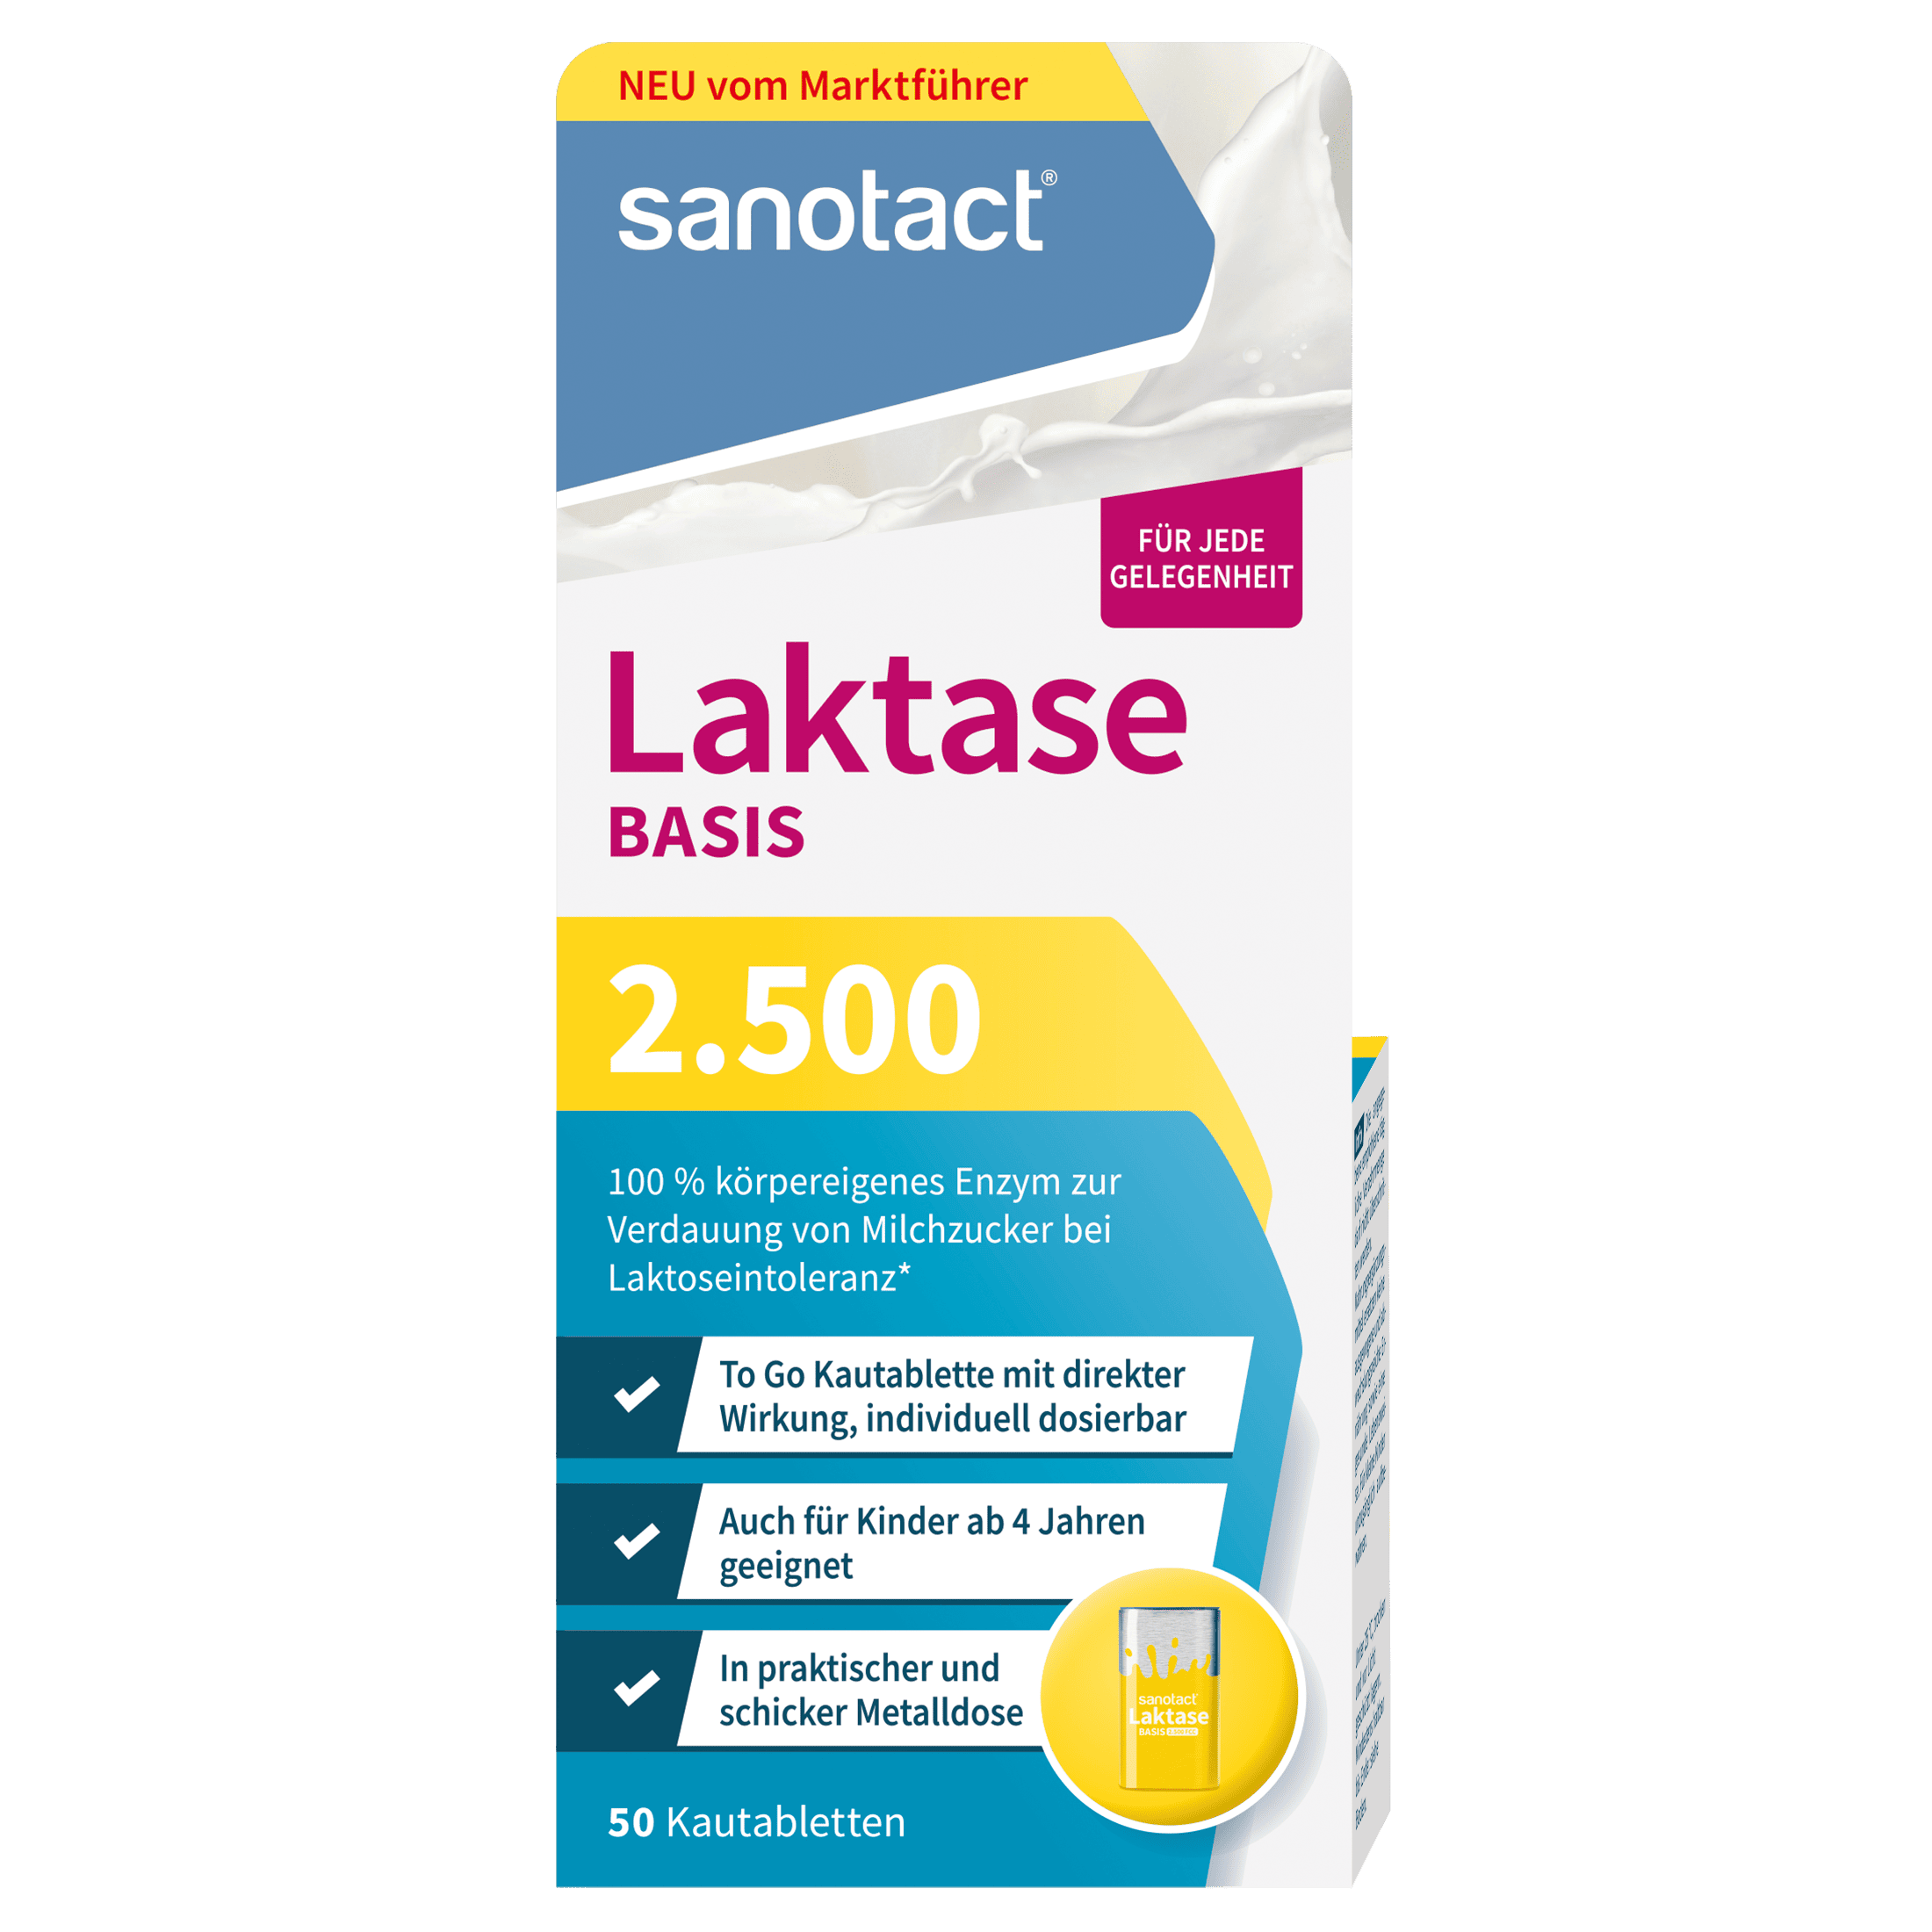 Lactase 2,500 BASIS